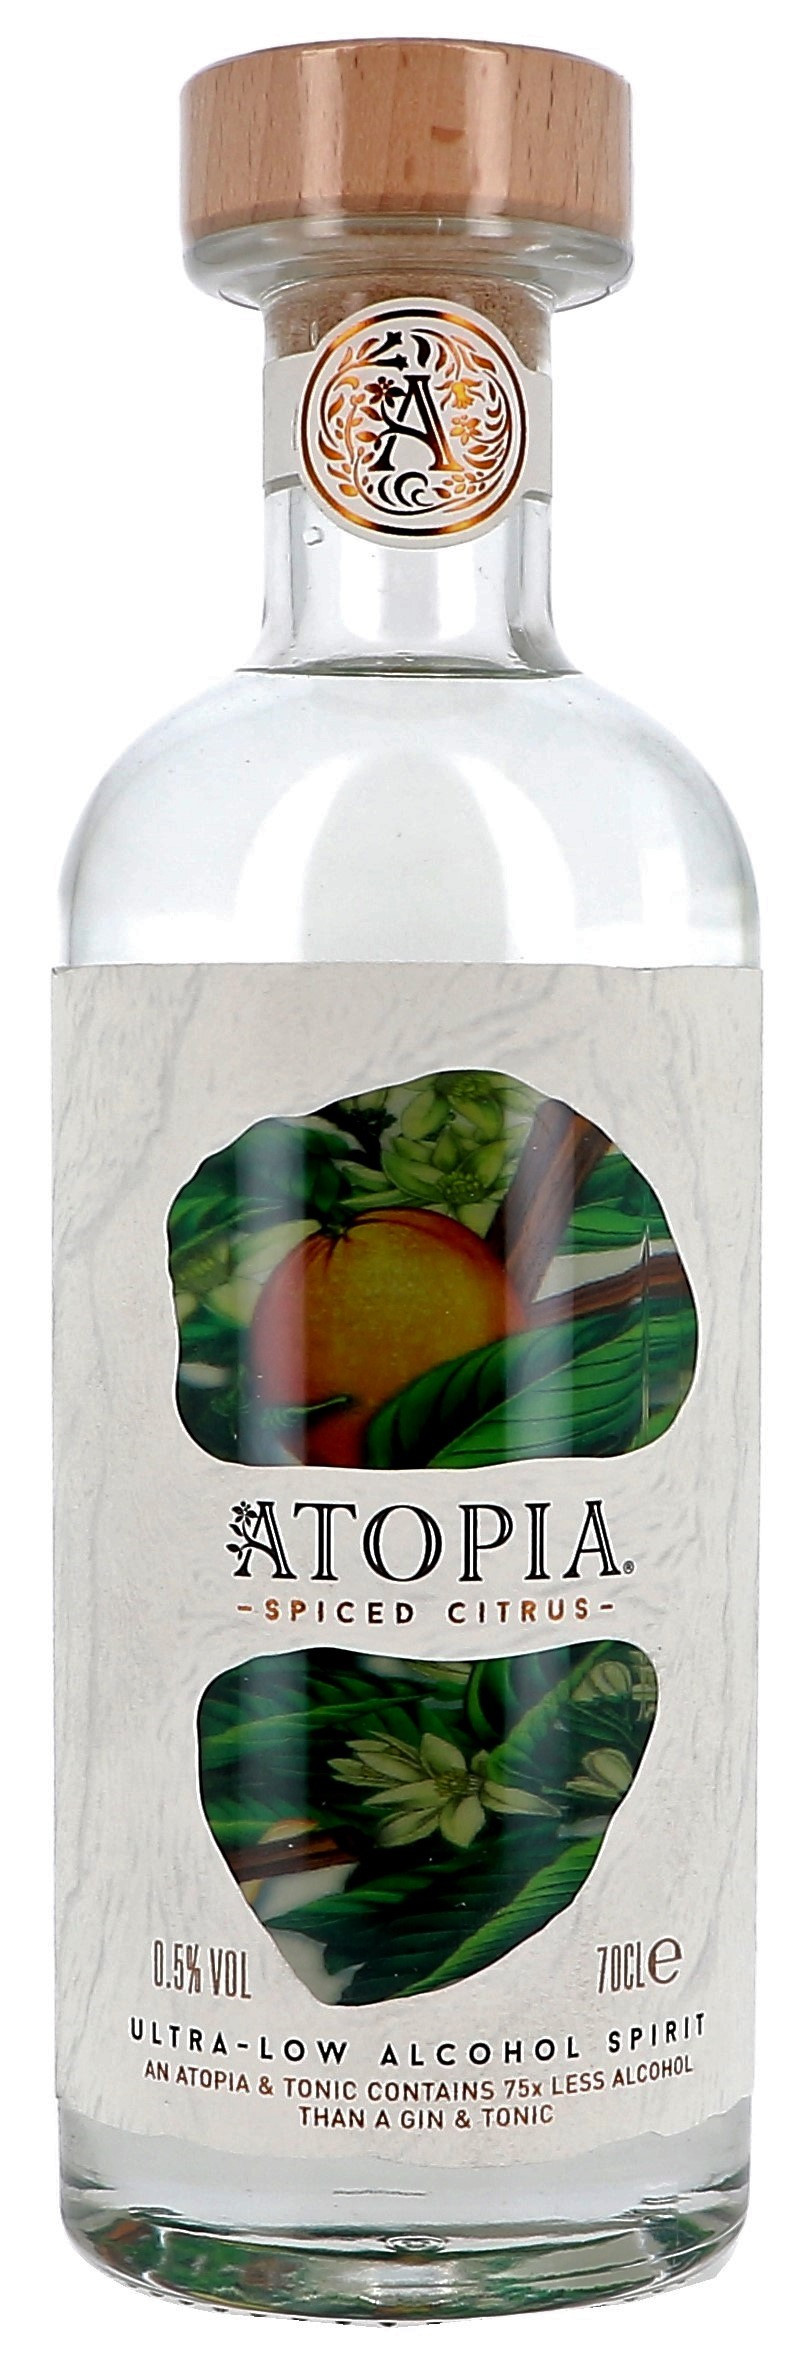 Atopia Spiced Citrus 70cl 0.5% Gin sans Alcool